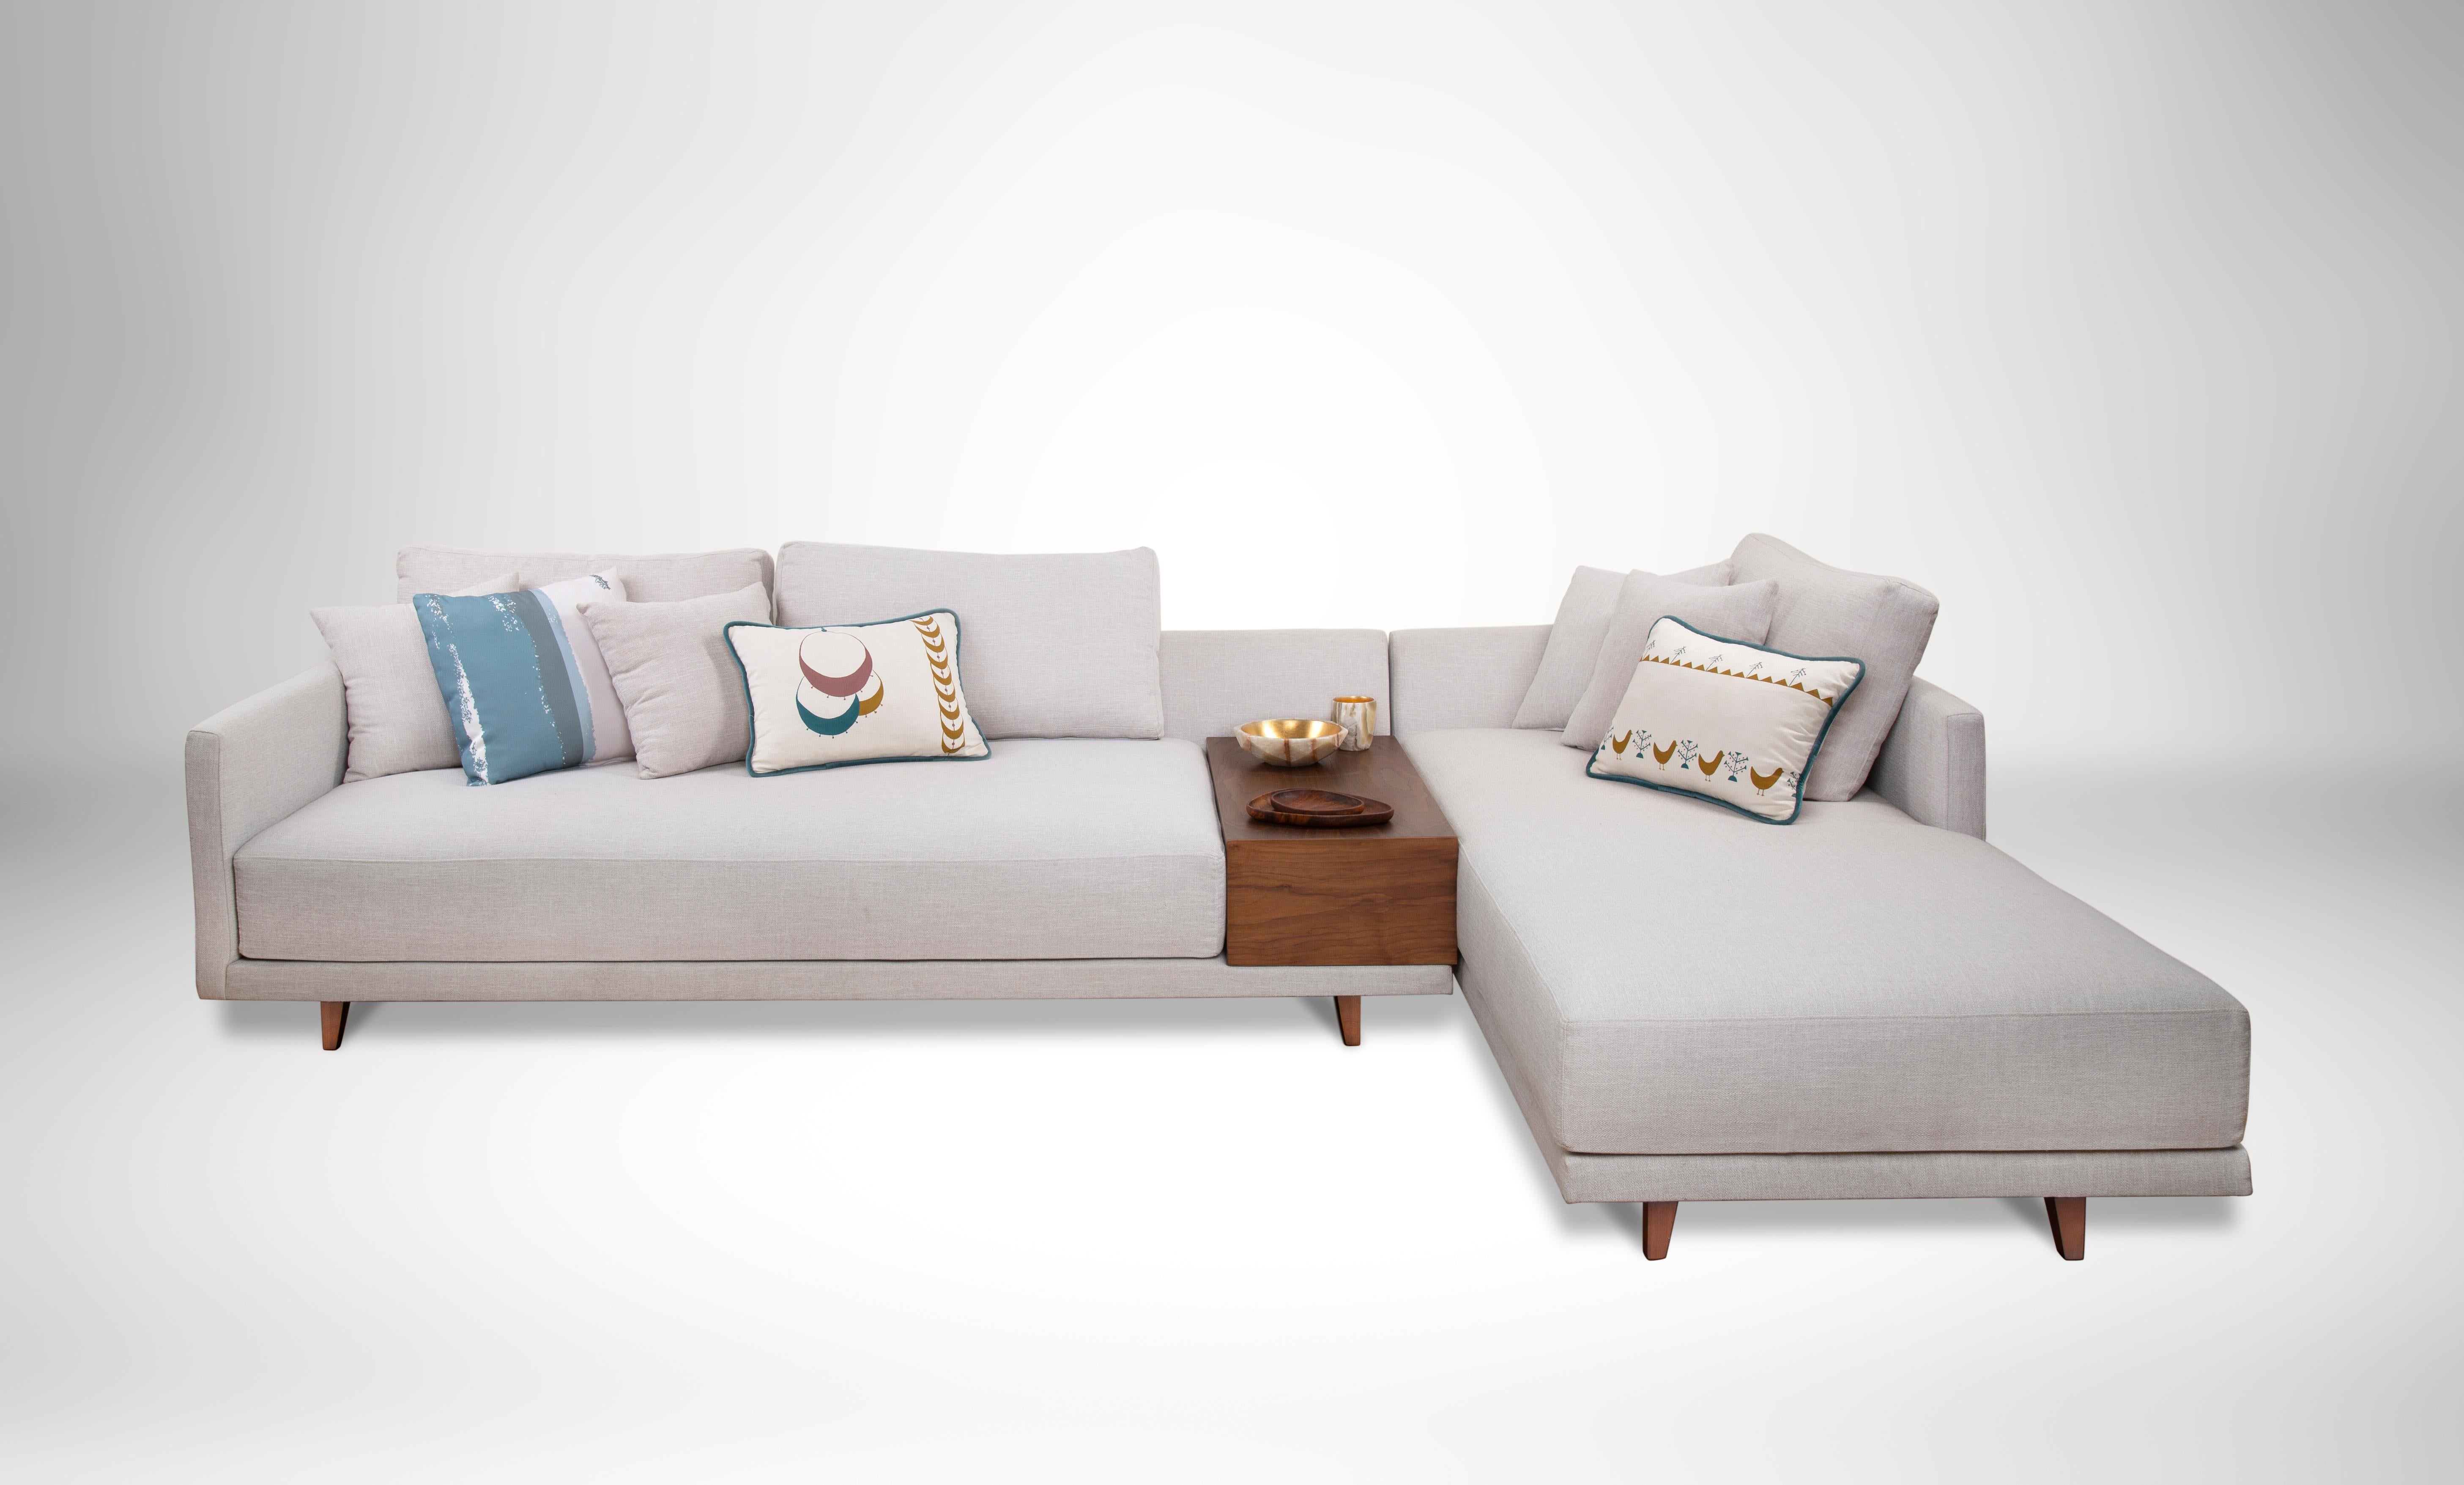 L-förmiges Sofa mit integriertem Beistelltisch aus Nussbaumholz mit Schaumstoff- und Faserfüllung.
Klare Linien und ein eingelassenes Tablett aus Walnussholz lassen dieses L-förmige Sofa wie eine schwebende Insel wirken. Das Gestell unseres